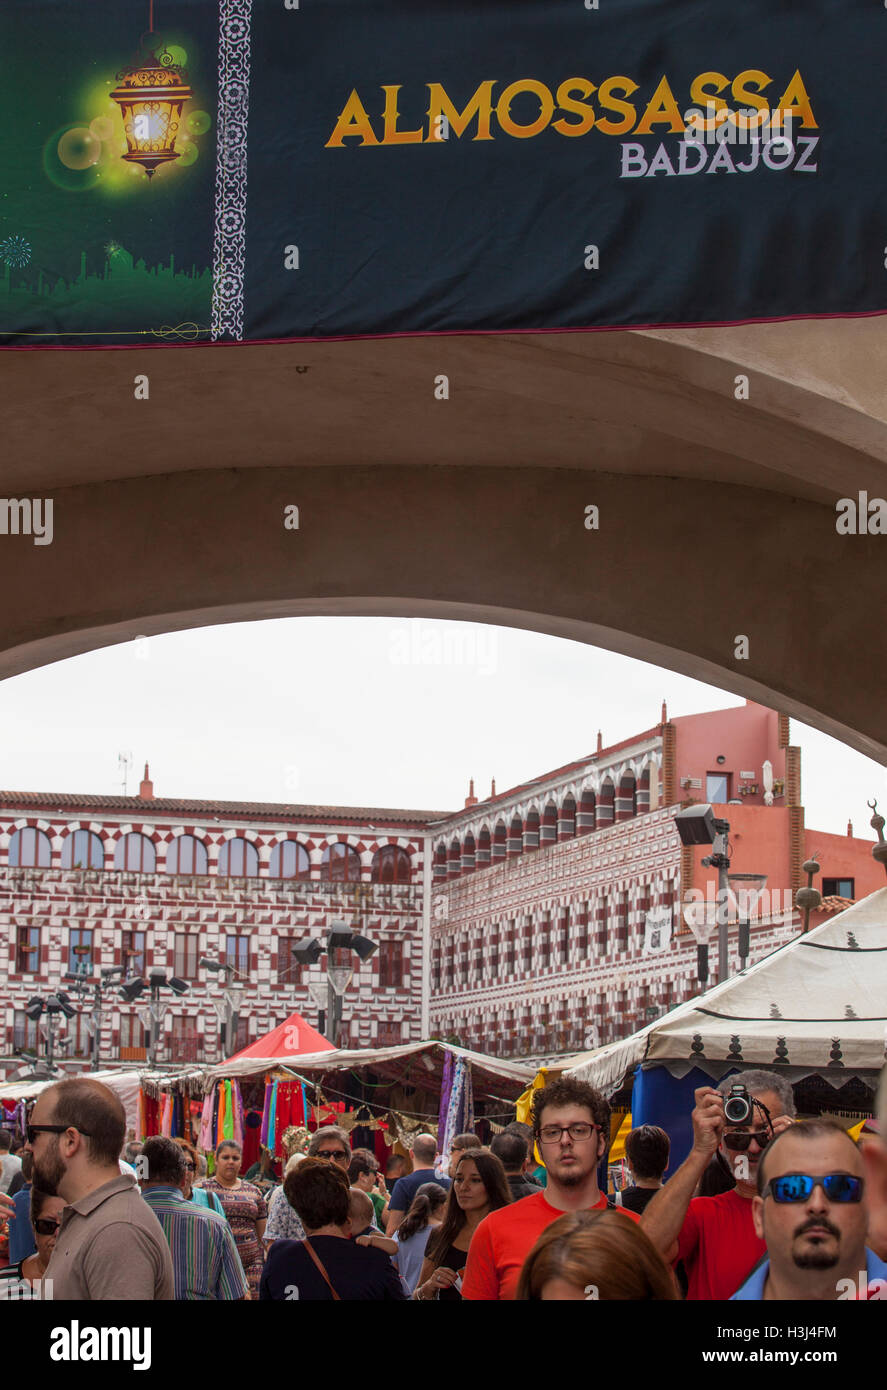 Badajoz, Spagna - 25 Settembre 2016: folla visitando festival Almossassa tende. Almossassa Festival della cultura Foto Stock